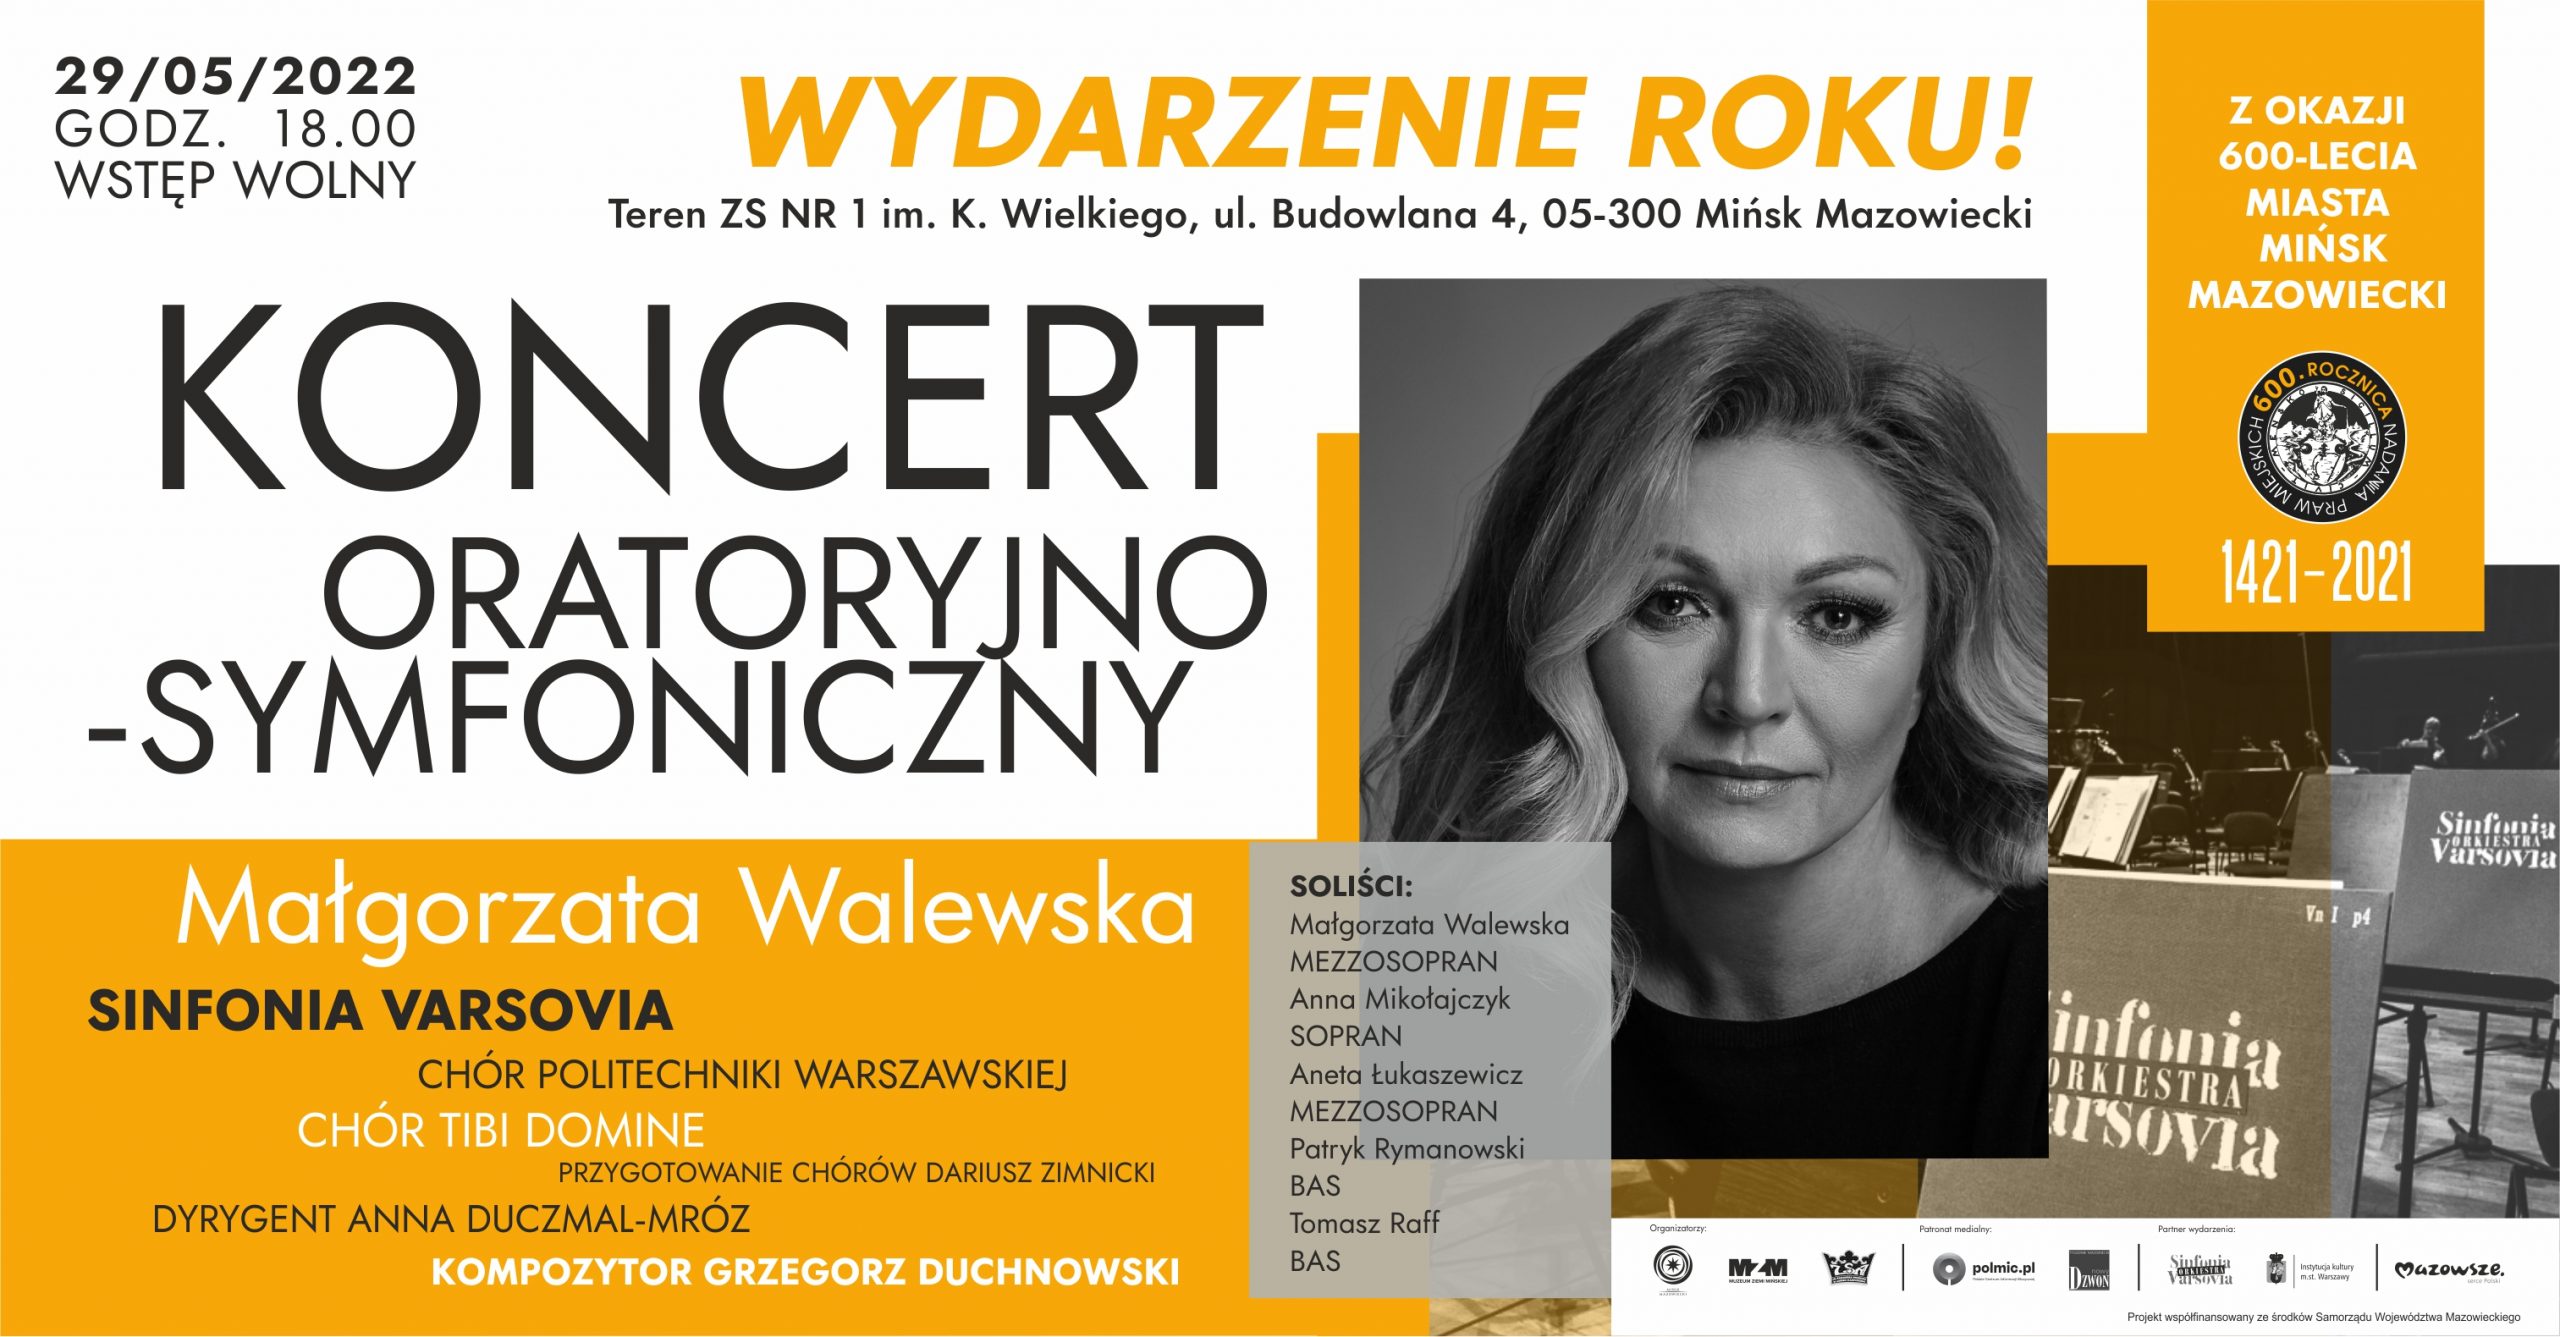 Koncert oratoryjno-symfoniczny z okazji 600-lecia Miasta Mińsk Mazowiecki